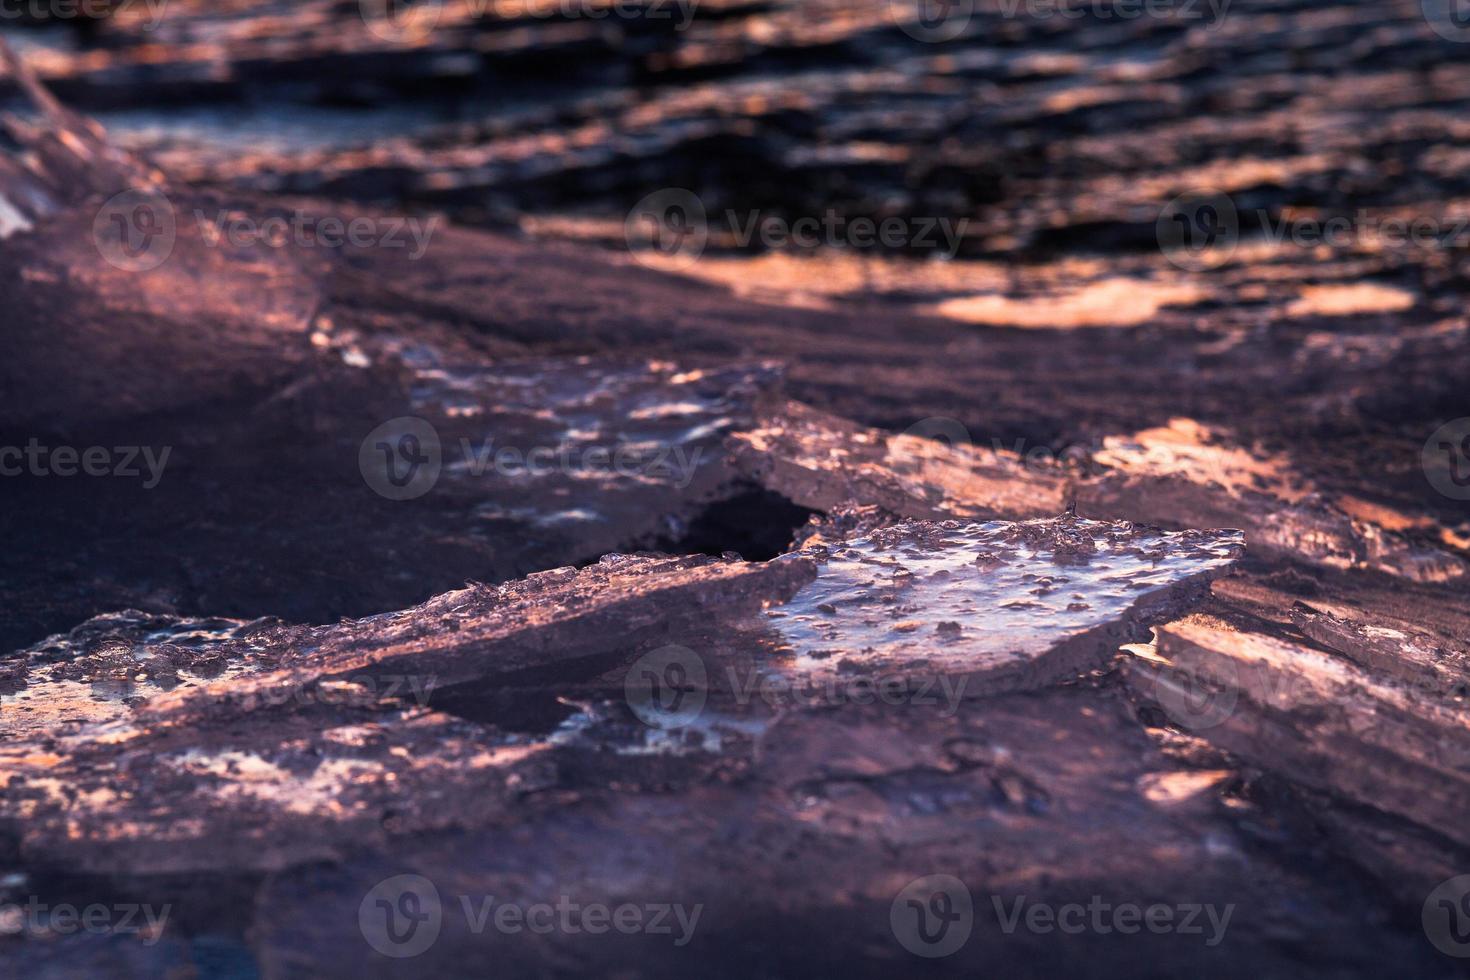 côte de la mer baltique avec galets et glace au coucher du soleil photo